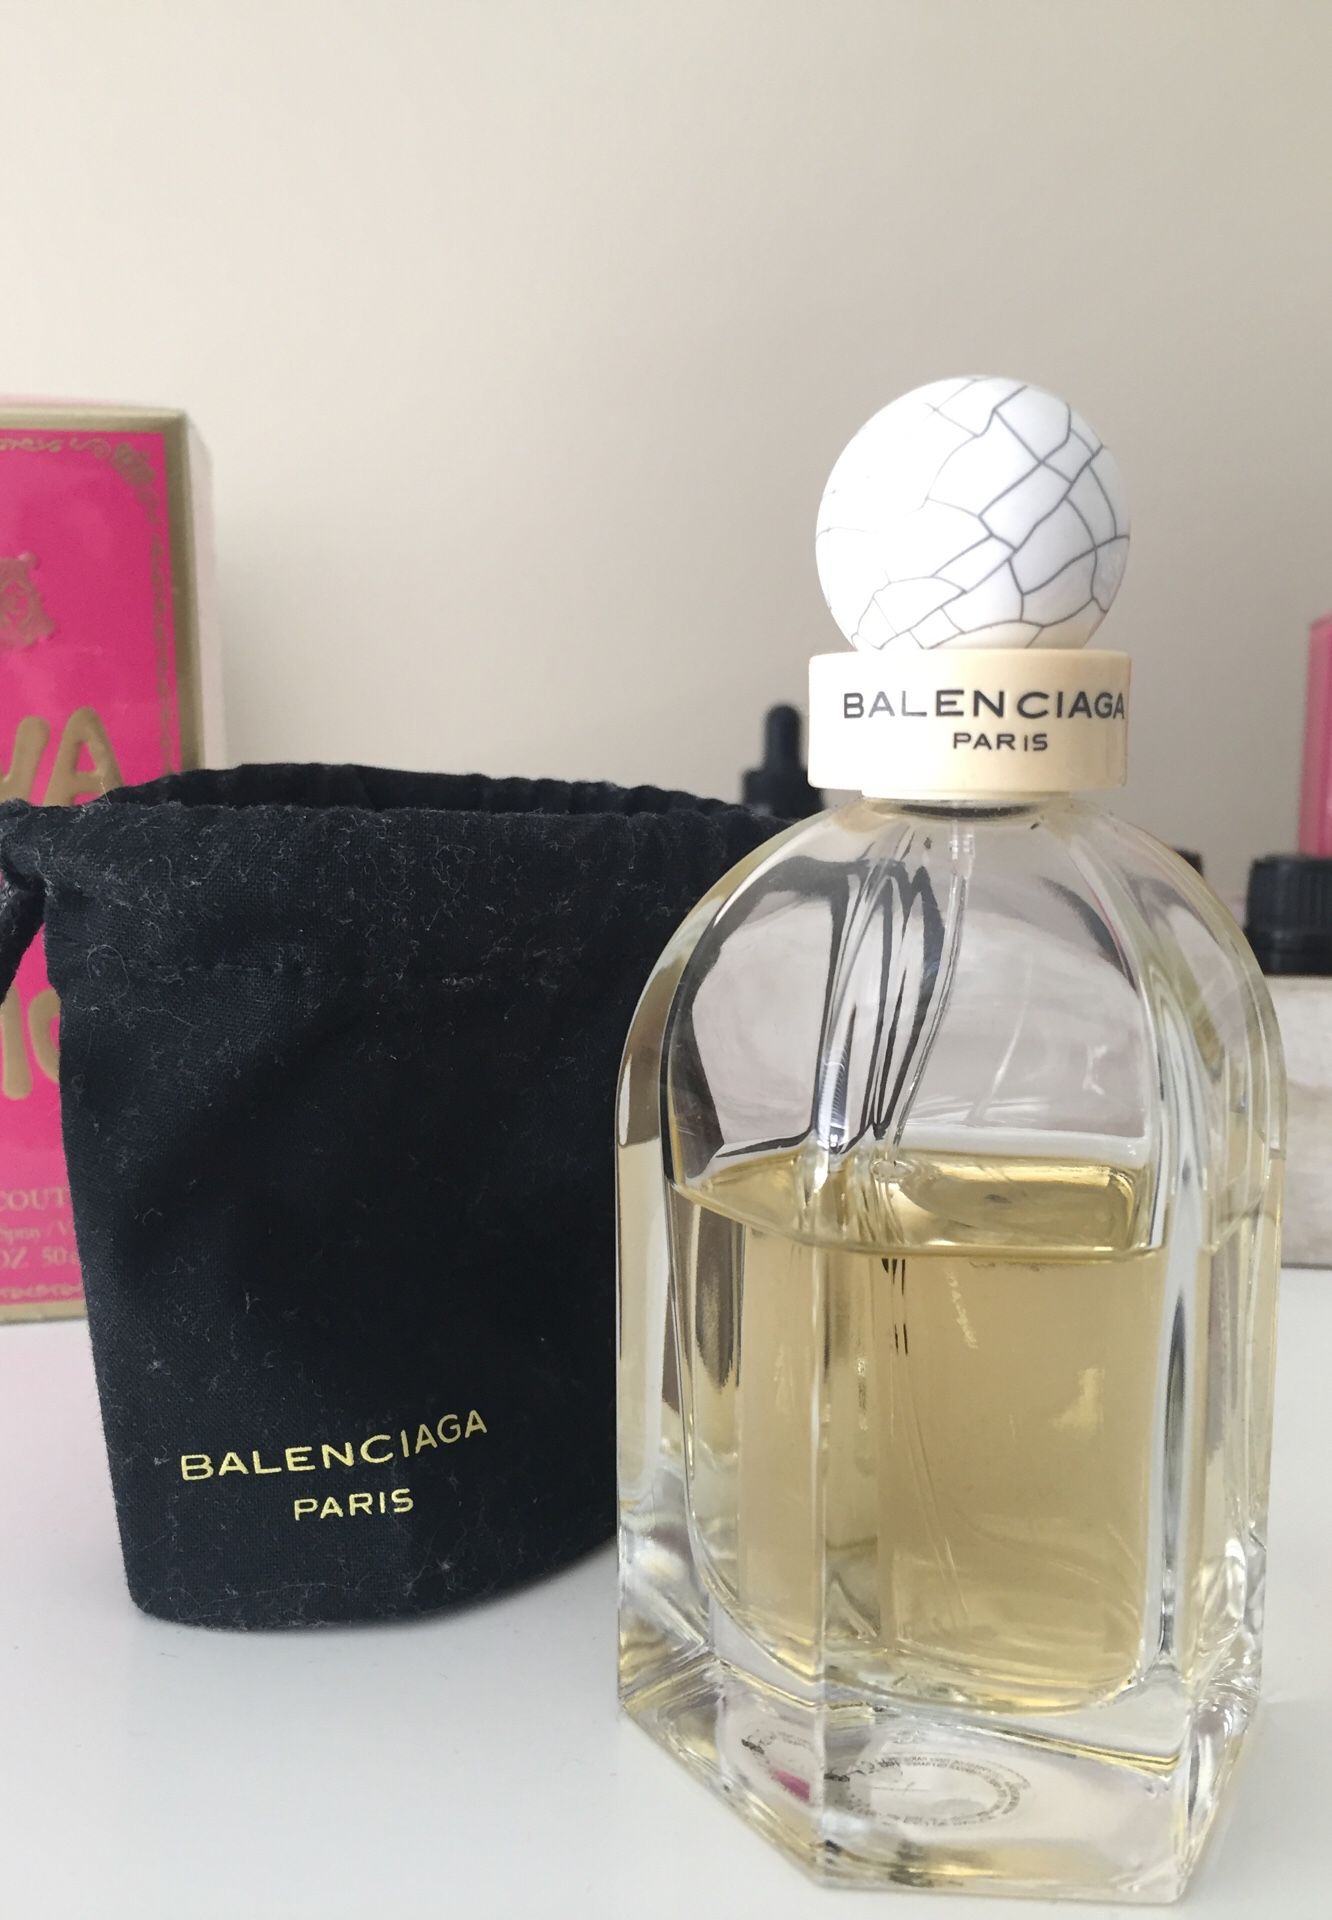 Balenciaga Paris Fragrance-75ml bottle